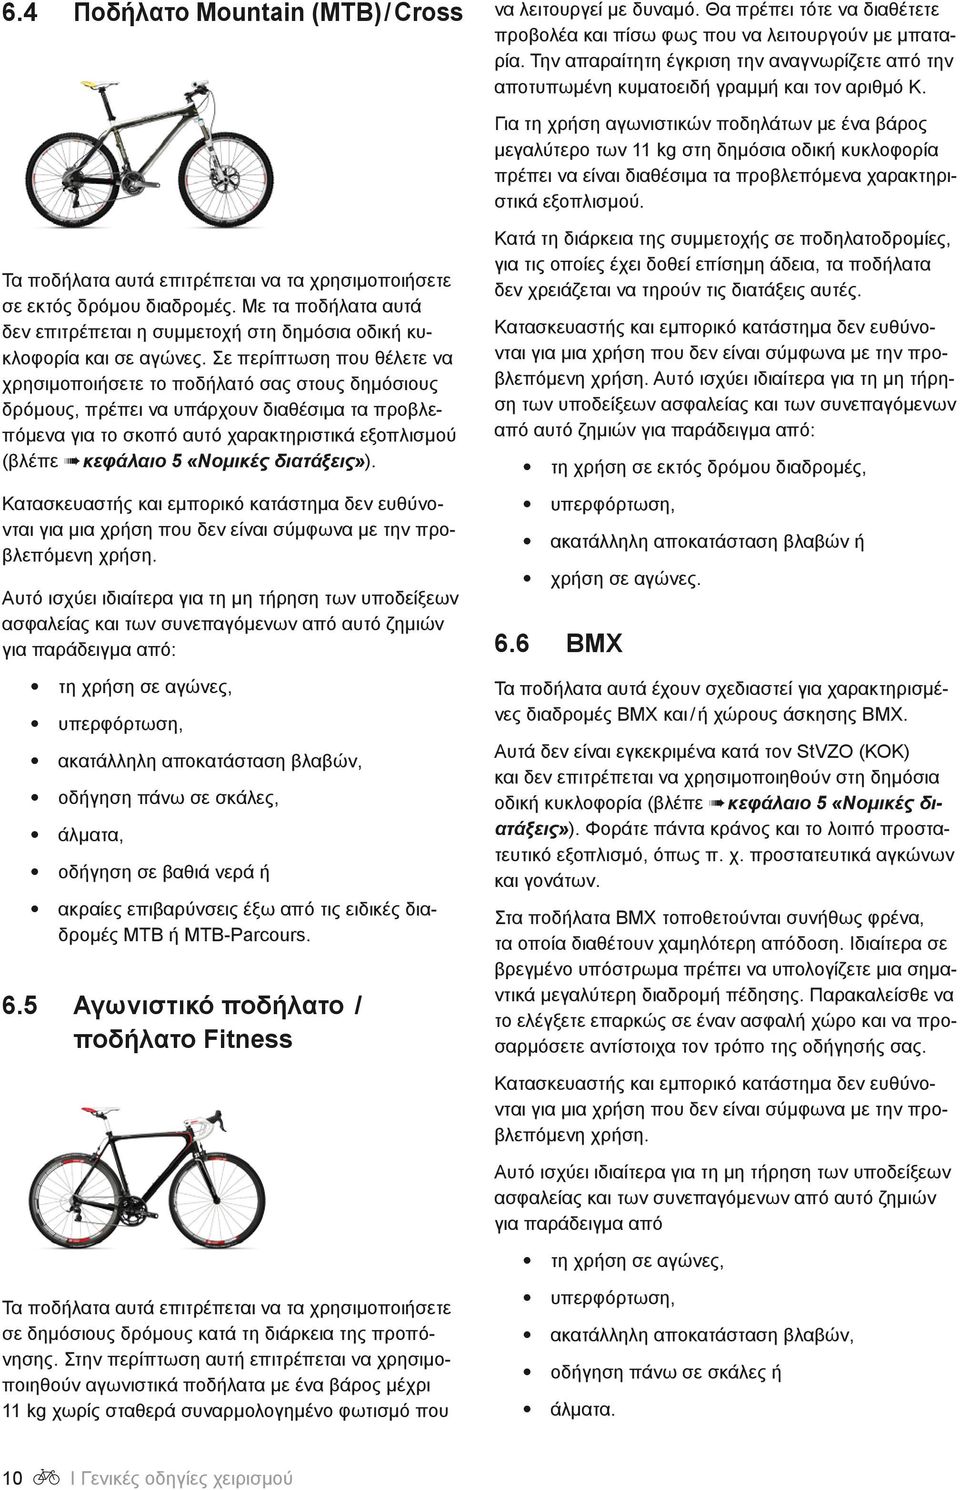 Για τη χρήση αγωνιστικών ποδηλάτων με ένα βάρος μεγαλύτερο των 11 kg στη δημόσια οδική κυκλοφορία πρέπει να είναι διαθέσιμα τα προβλεπόμενα χαρακτηριστικά εξοπλισμού.